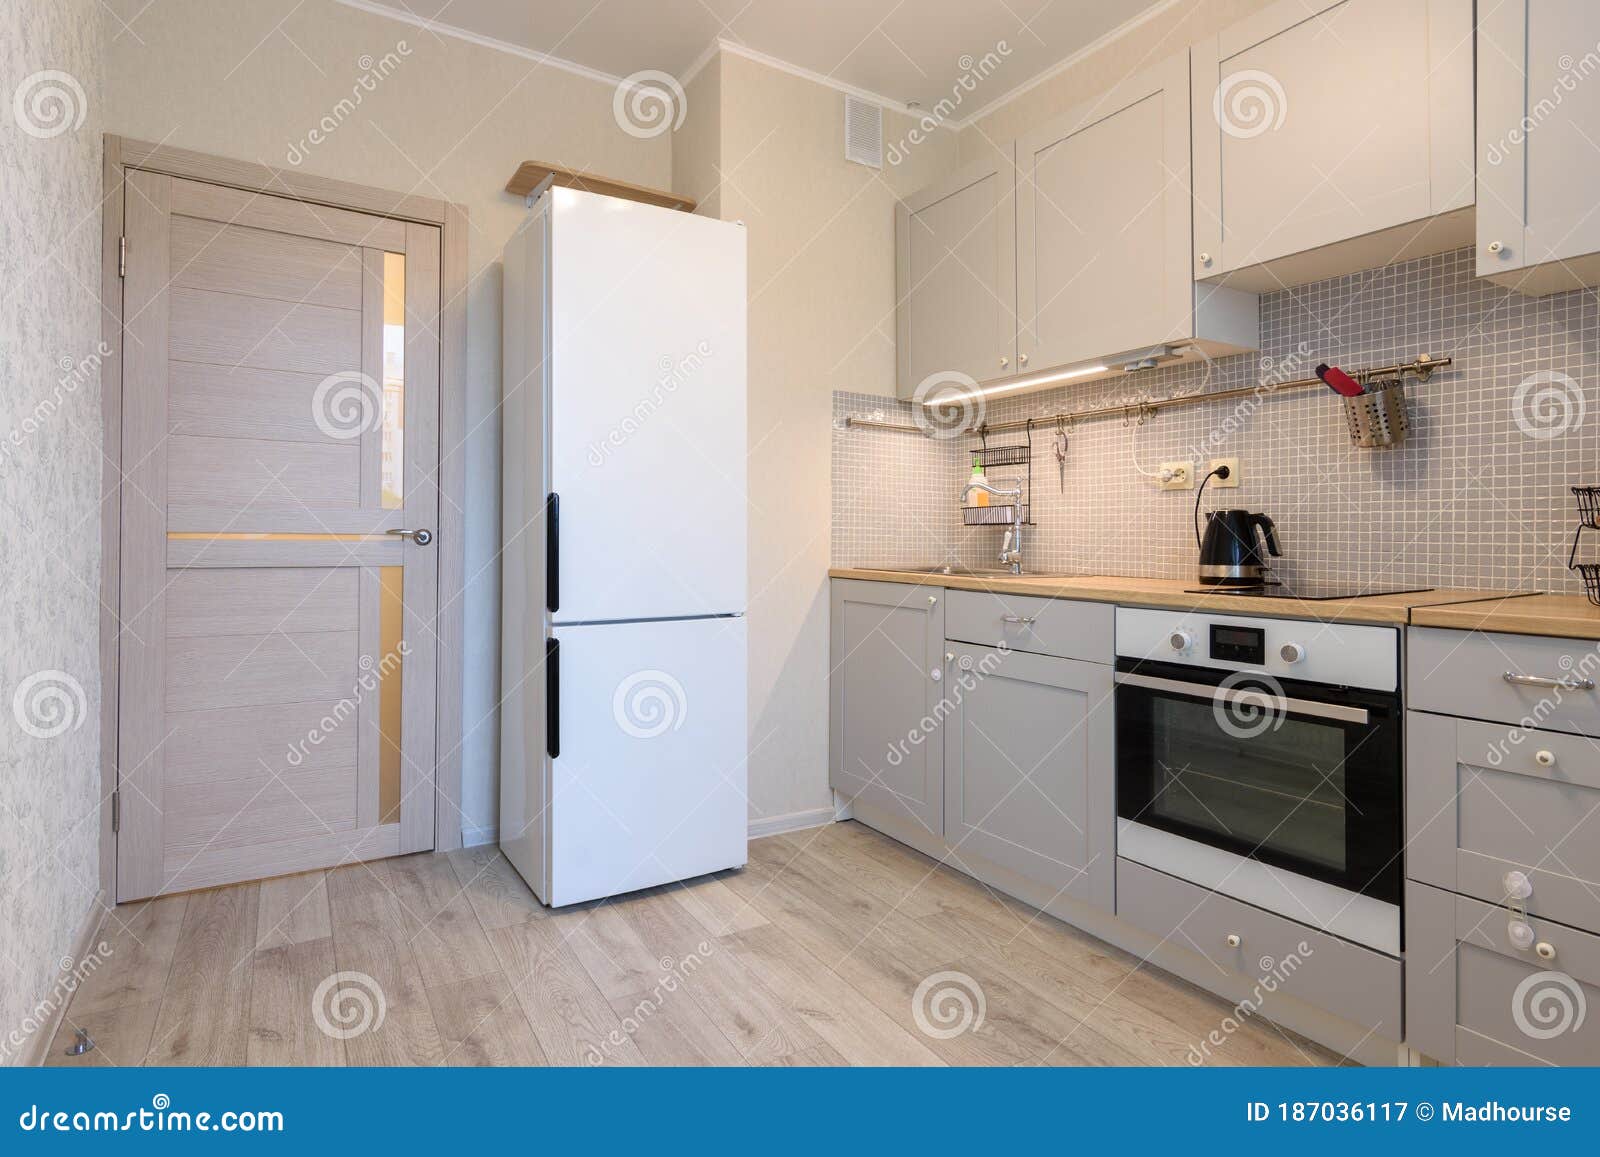 20,20 Apartment Kitchen Small Photos   Free & Royalty Free Stock ...